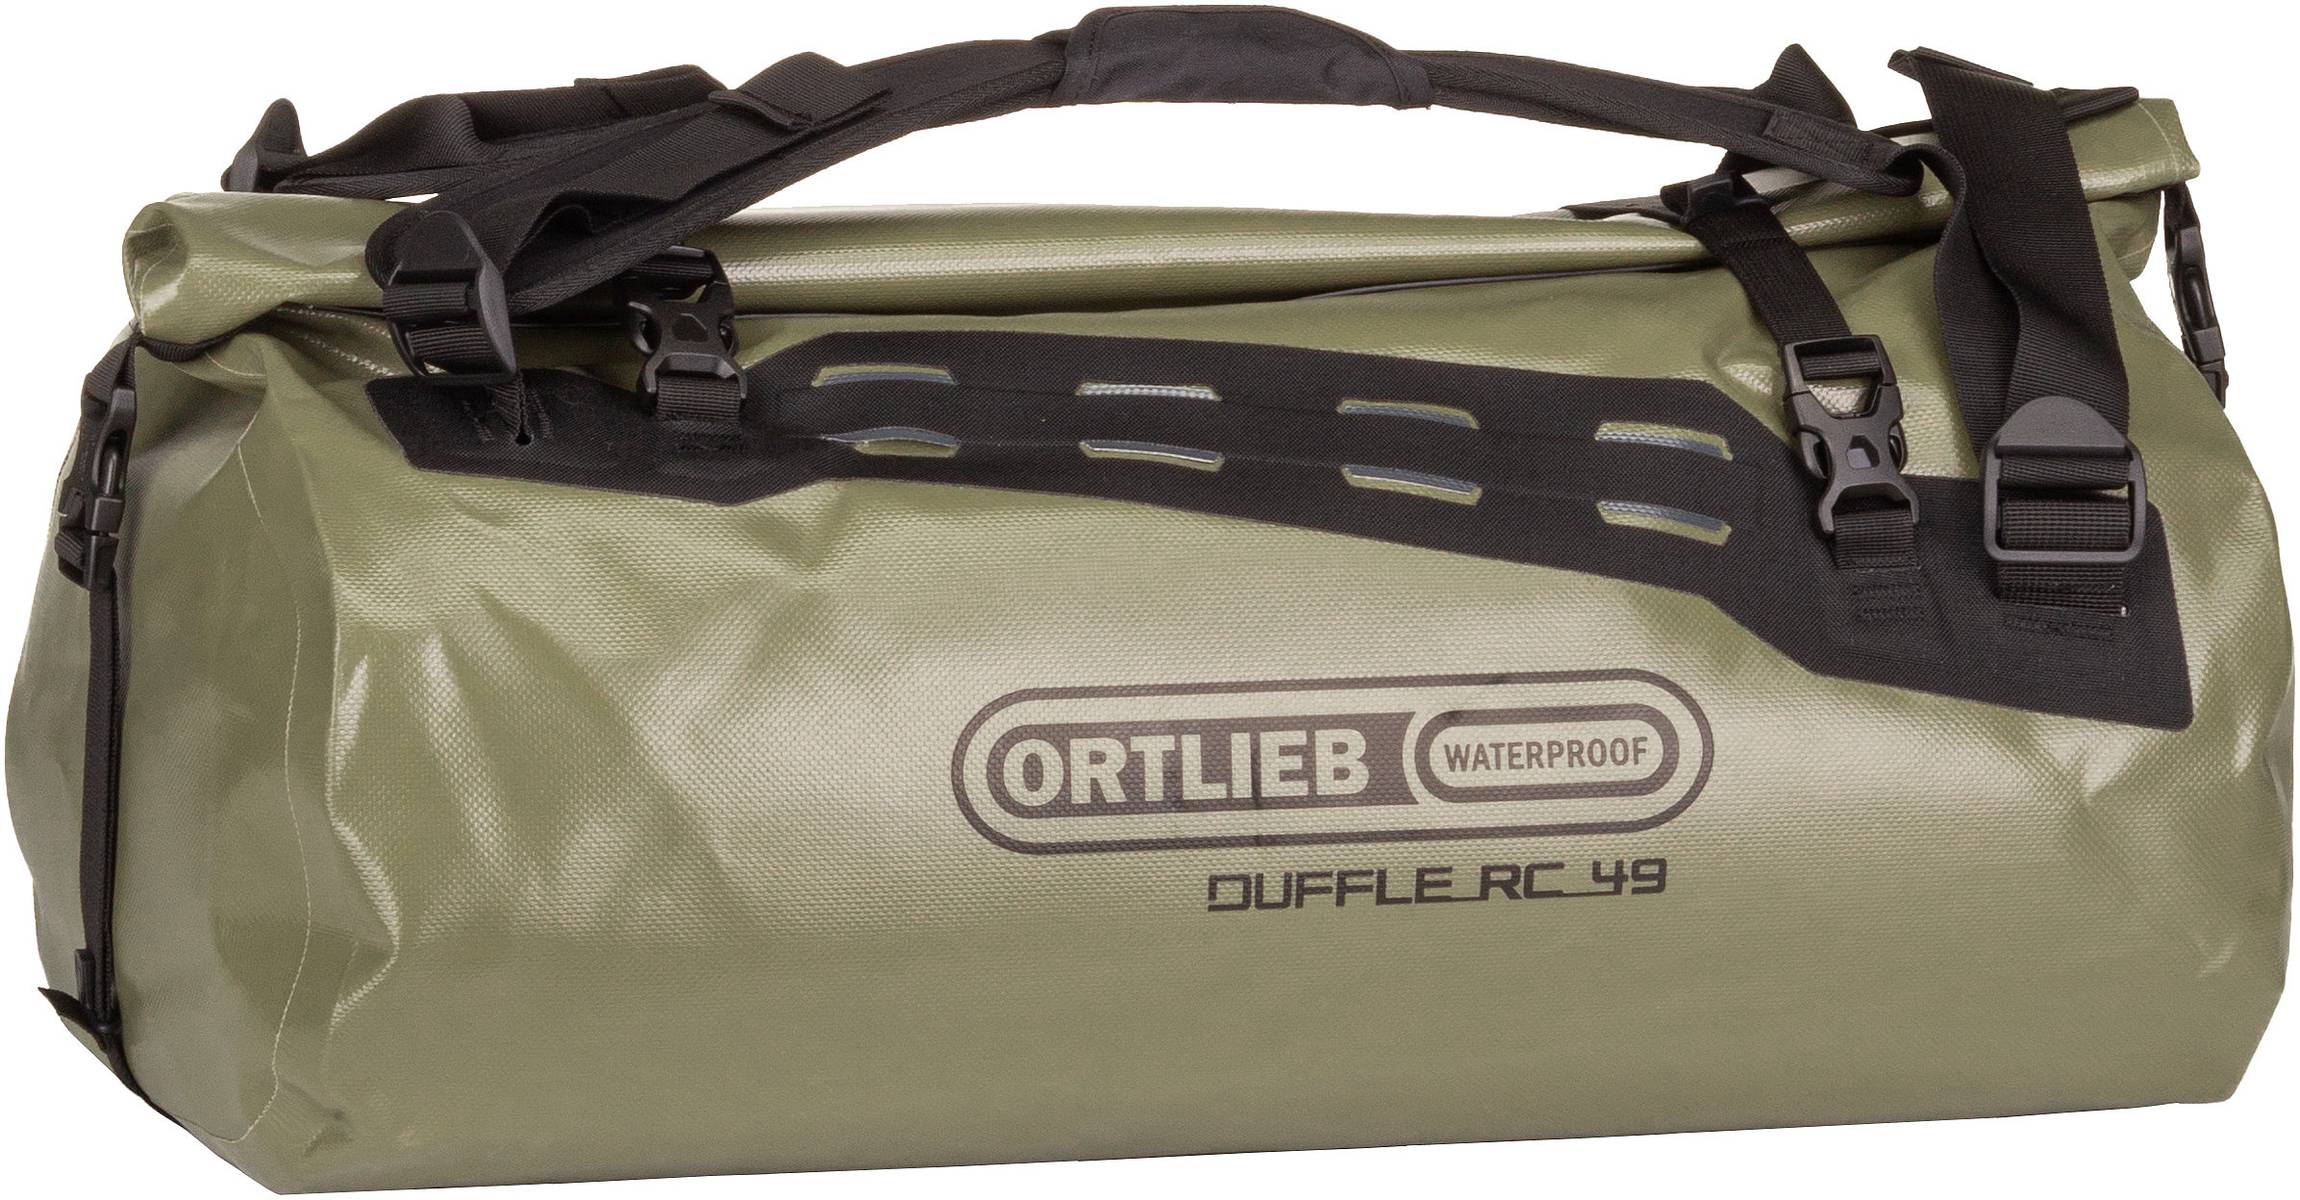 ORTLIEB Duffle RC 49  in Oliv (49 Liter), Reisetasche